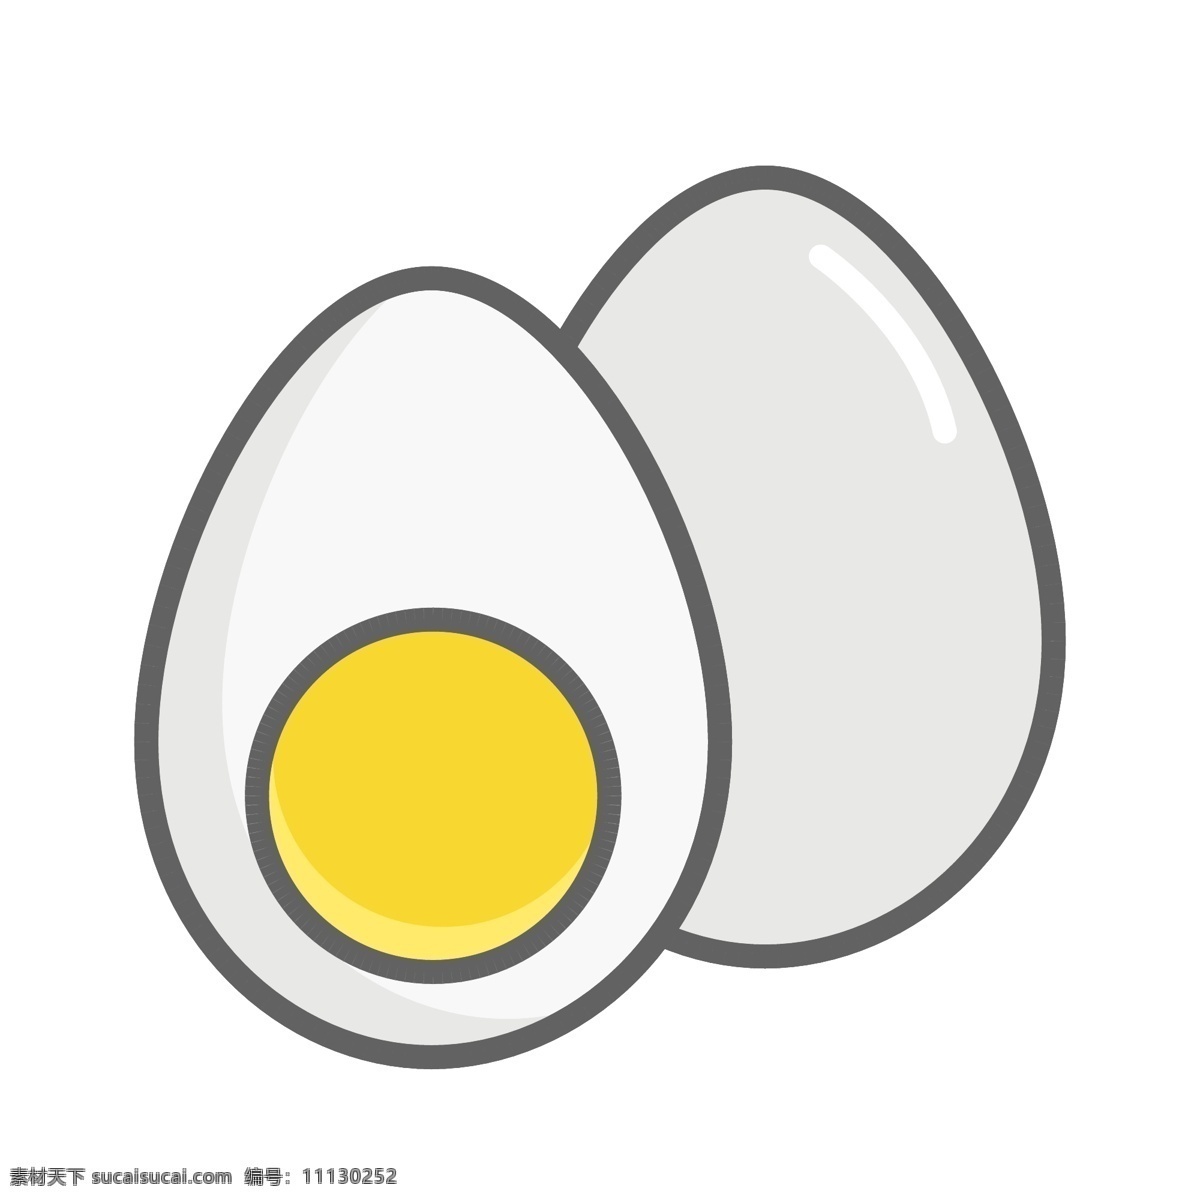 手绘 卡通 鸡蛋 简图 蛋 蛋黄 半个鸡蛋 鸡蛋简笔画